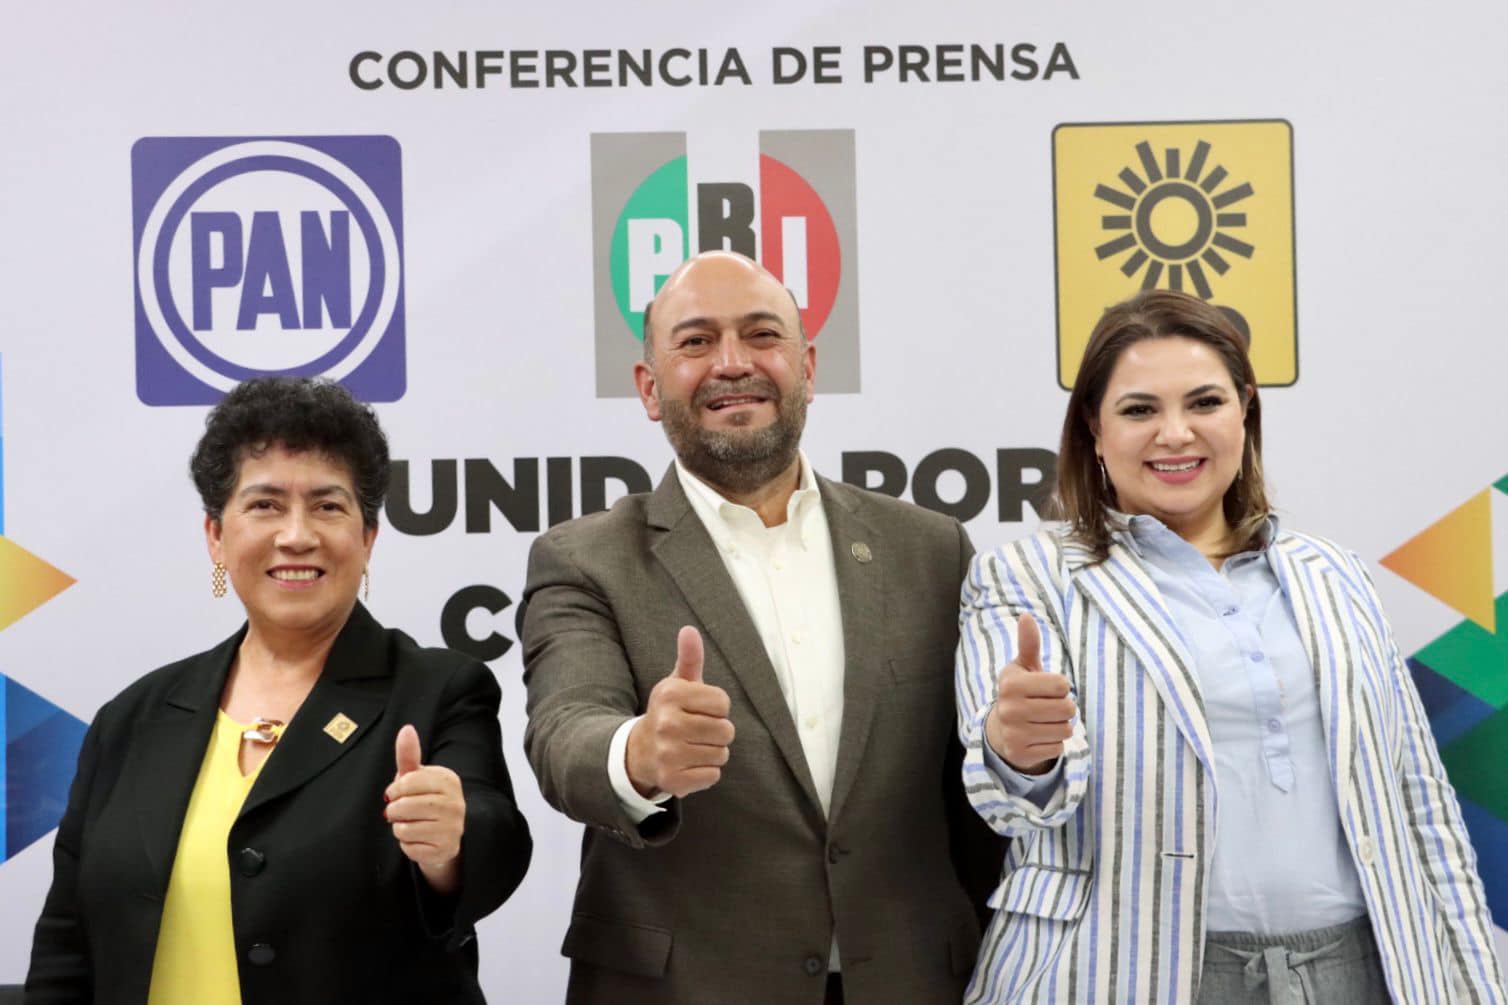 PRI, PAN y PRD van en unidad por gubernatura de Coahuila en 2023